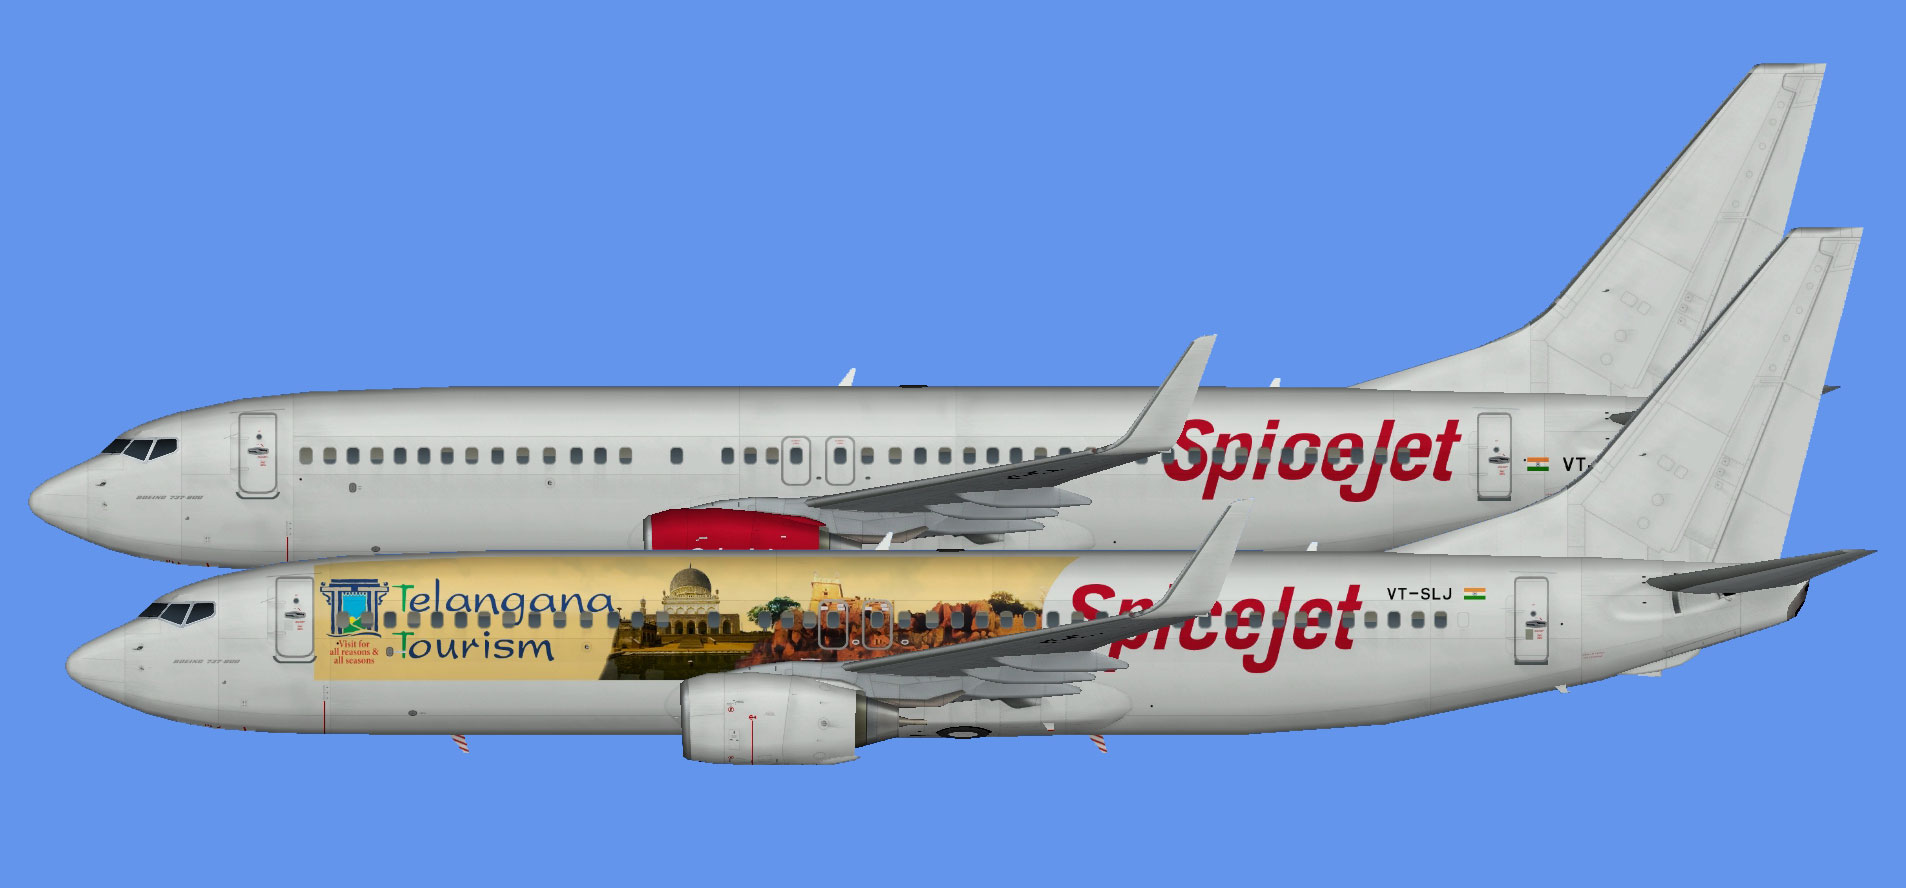 Spicejet 737-800 logojets